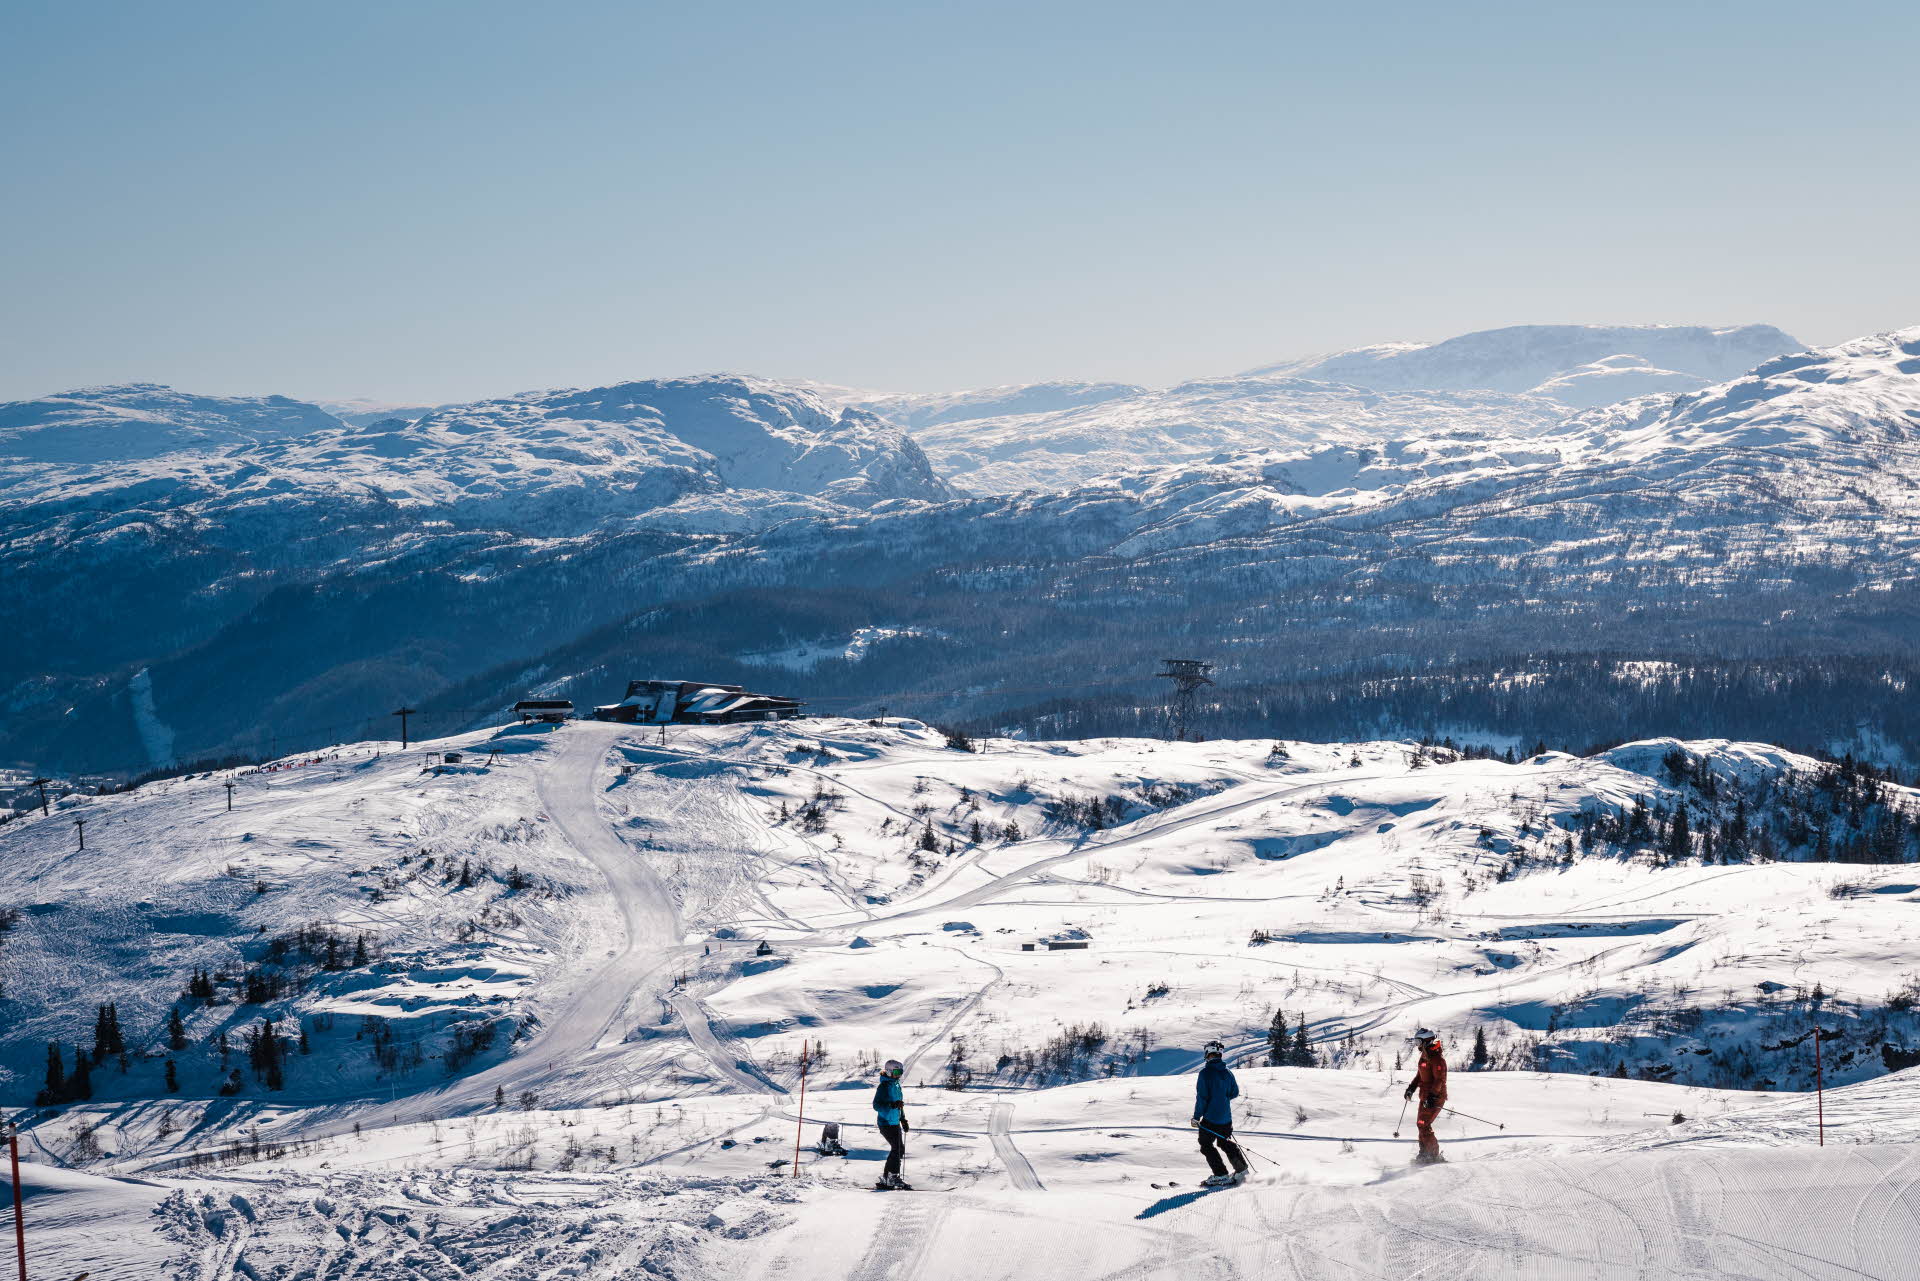 Skifahrer oberhalb der Bergstation der Voss-Gondelbahn mit Blick auf das Winterwunderland der Skipisten des Voss-Resorts.